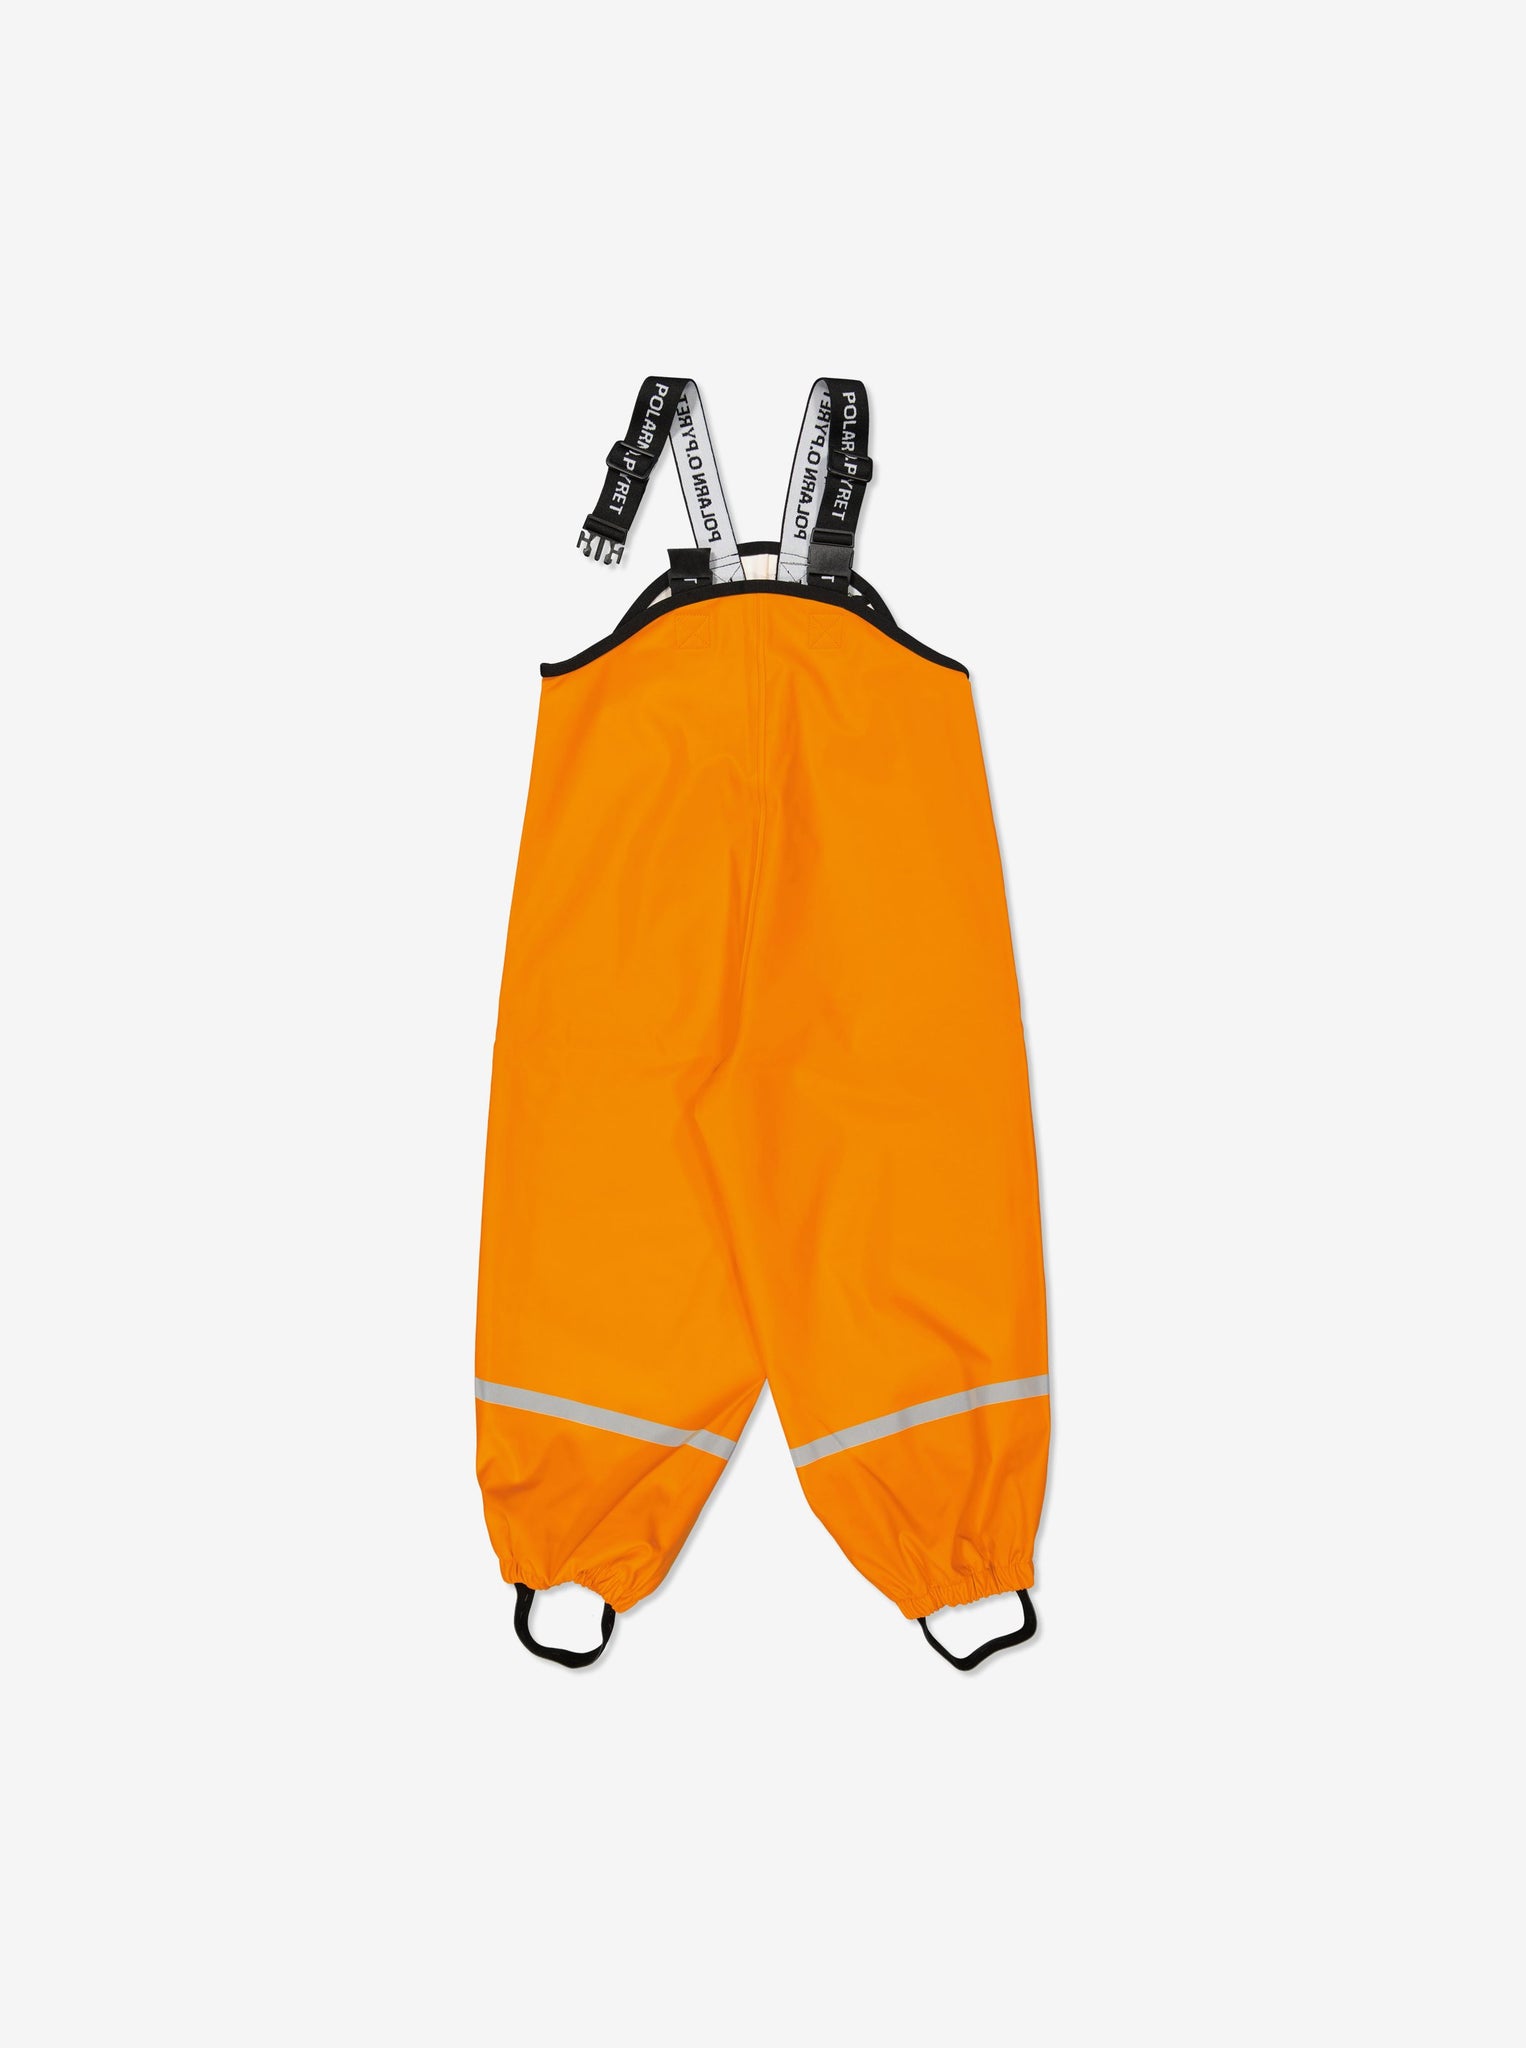 Yellow Kids Waterproof Rain Trousers from Polarn O. Pyret Kidswear. Durable waterproof kids trousers